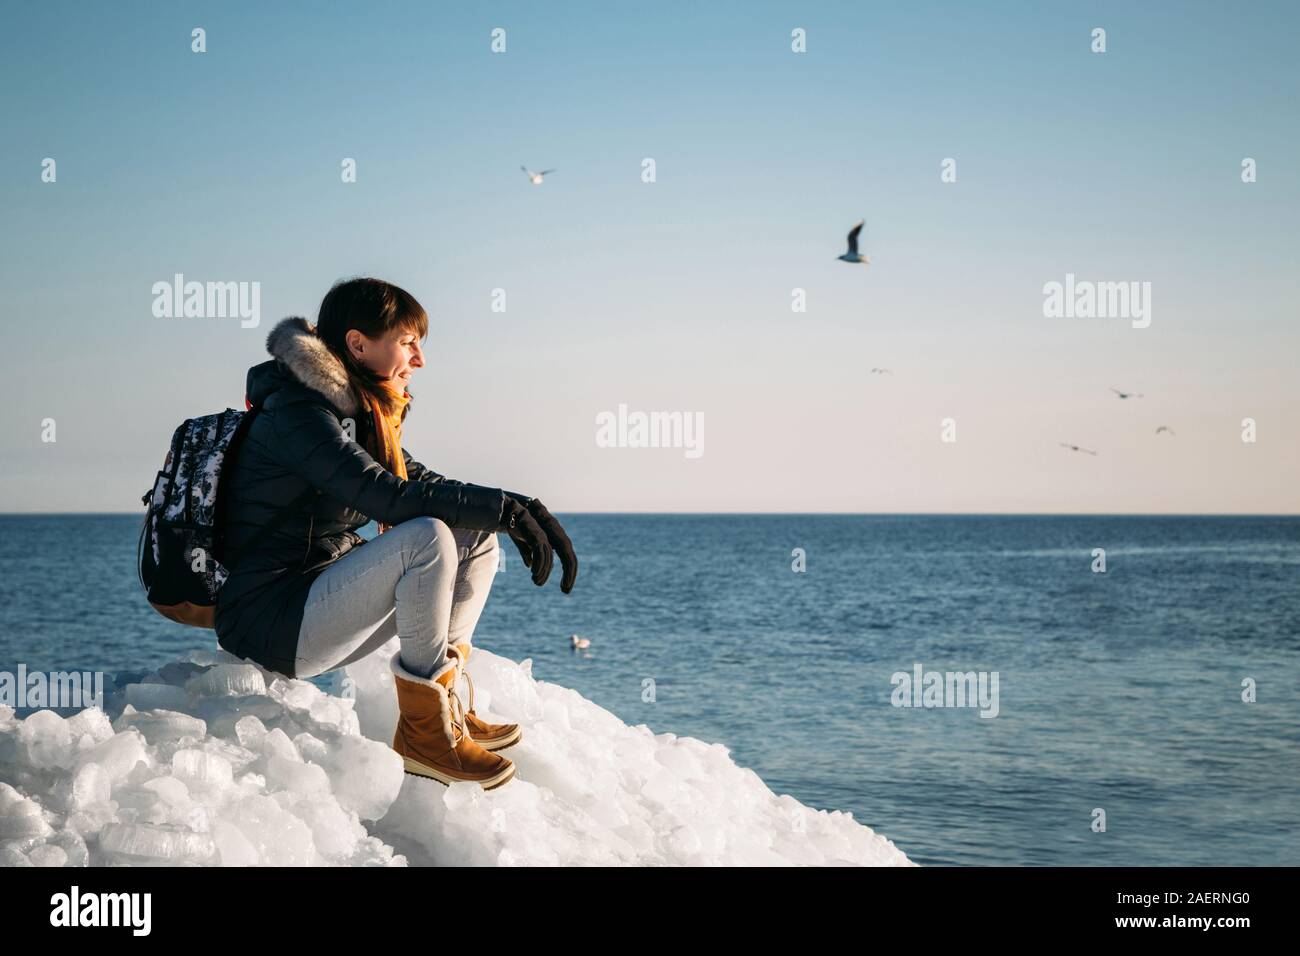 Young smiling woman sitting on a haut de la glace de mer congelés blocs sur une côte de la mer, avec un ciel bleu à l'arrière-plan, à frosty journée ensoleillée Banque D'Images